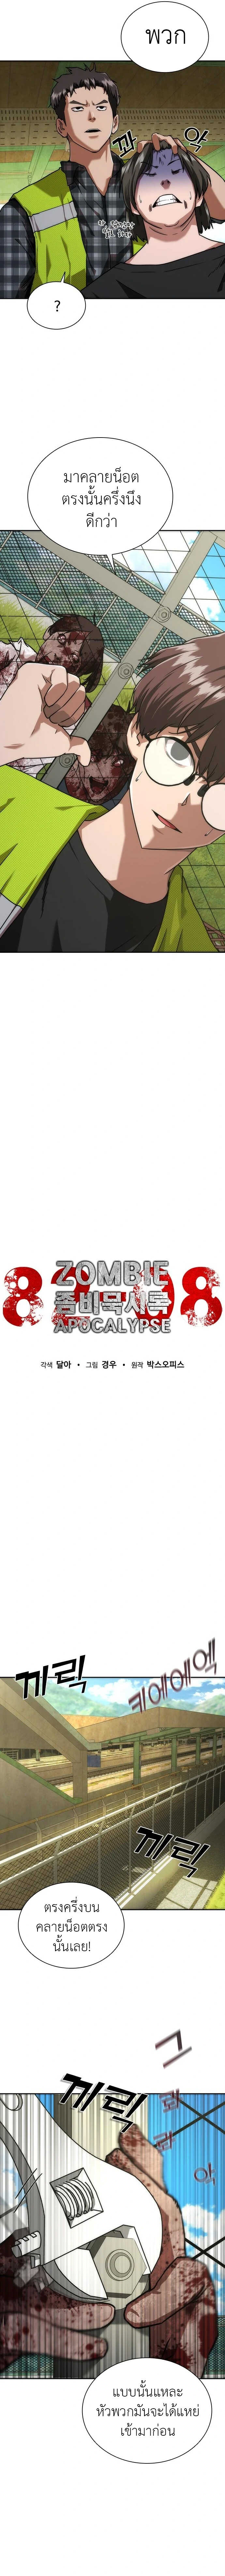 Zombie Apocalypse 11 04